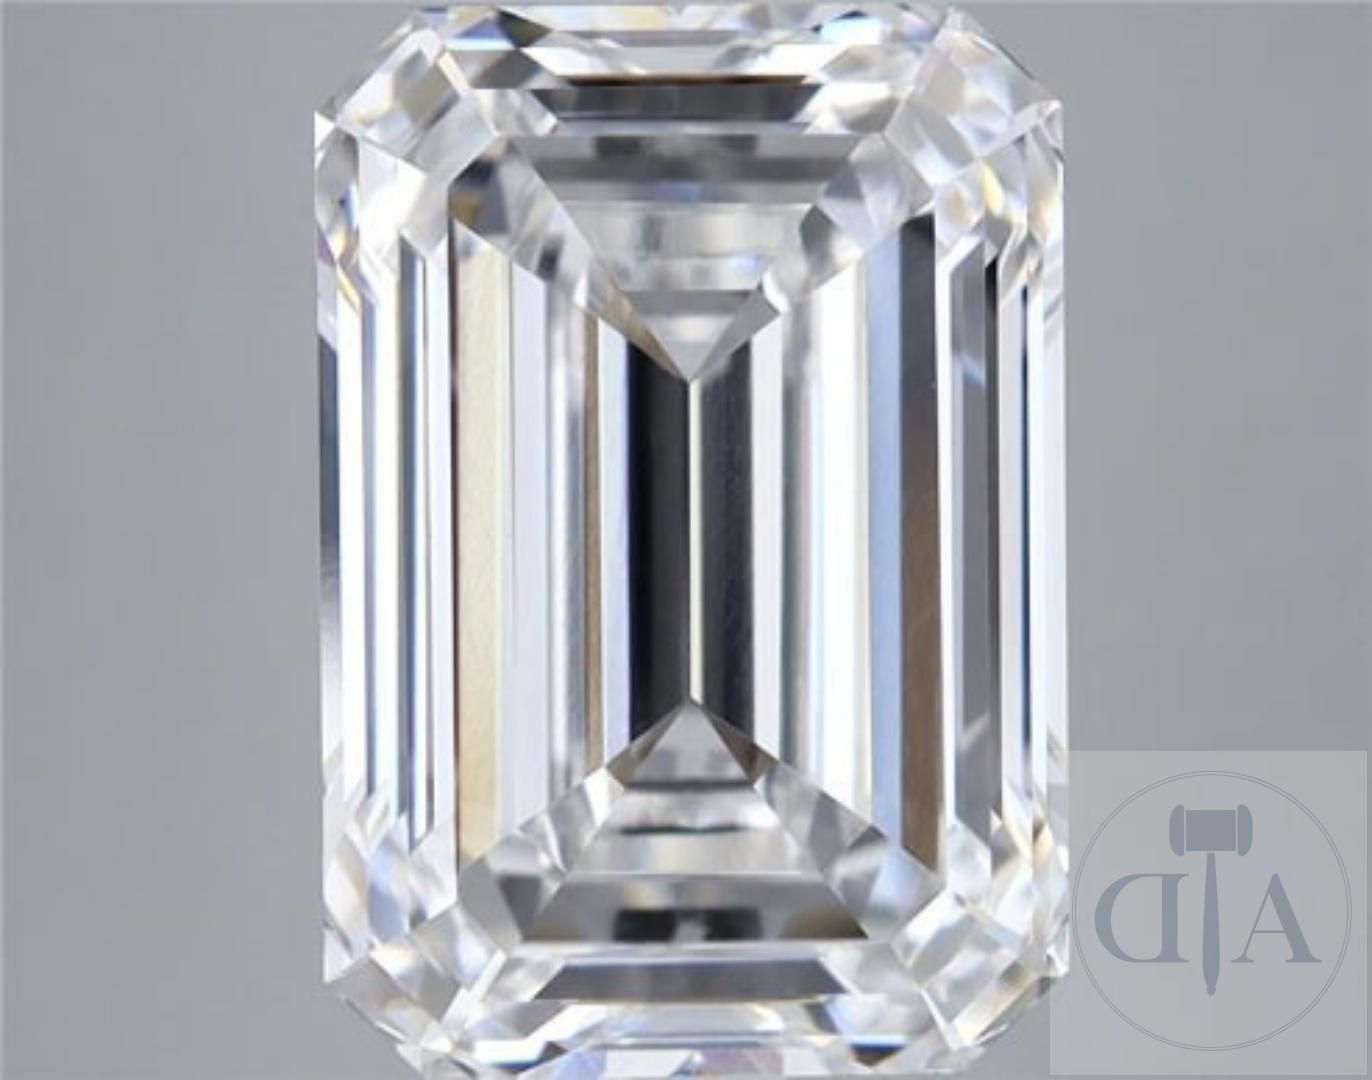 Null Impressionante diamante di alta qualità 5,01ct E VS1 con certificato IGI

D&hellip;